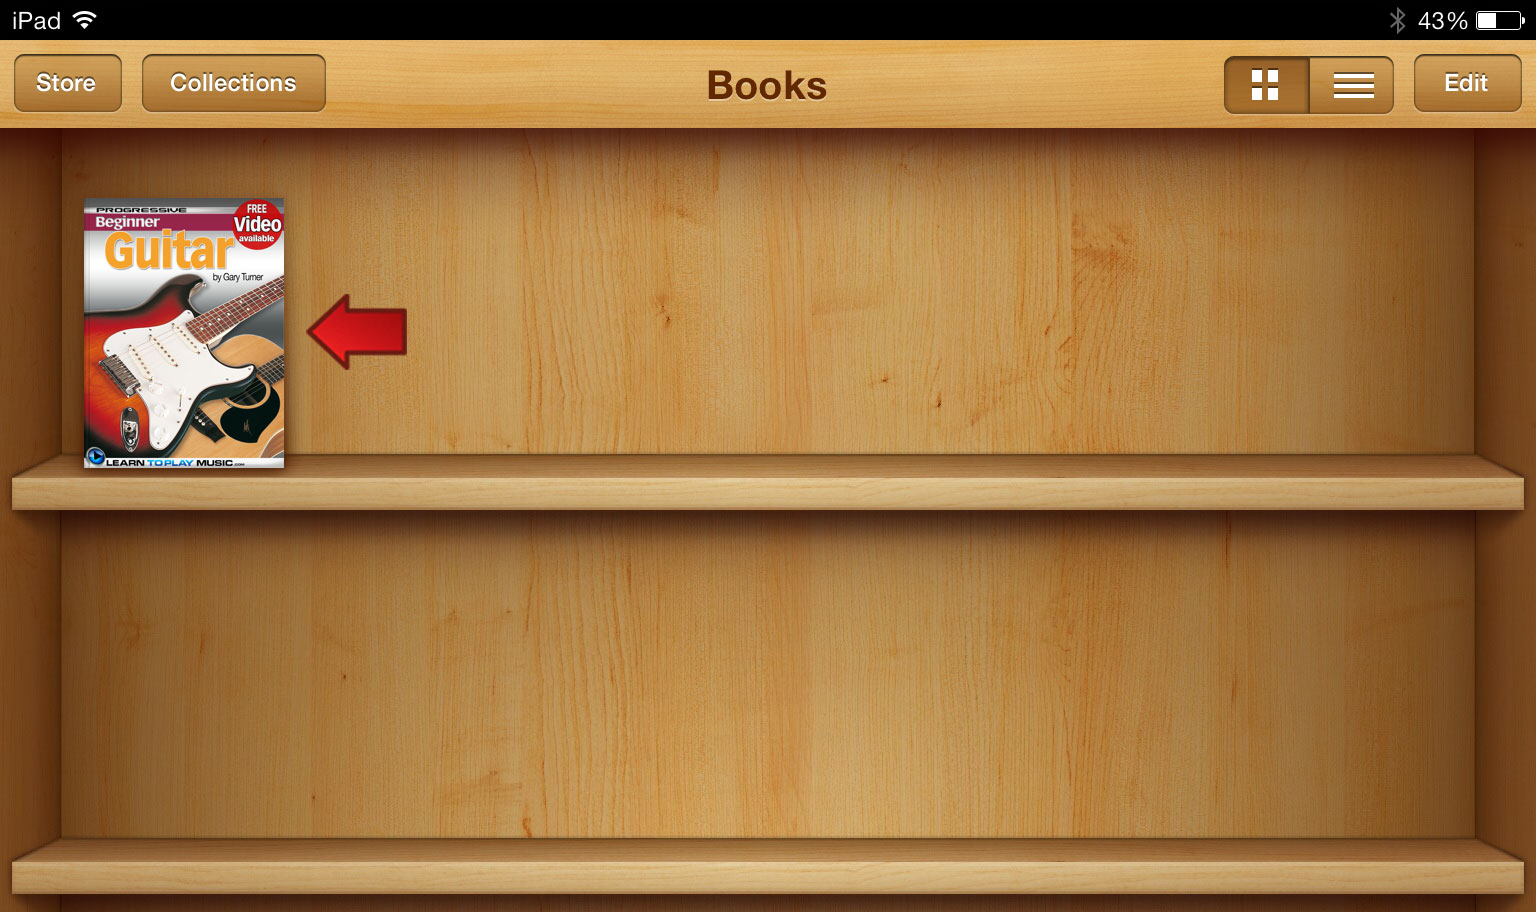 iPad: iBooks App